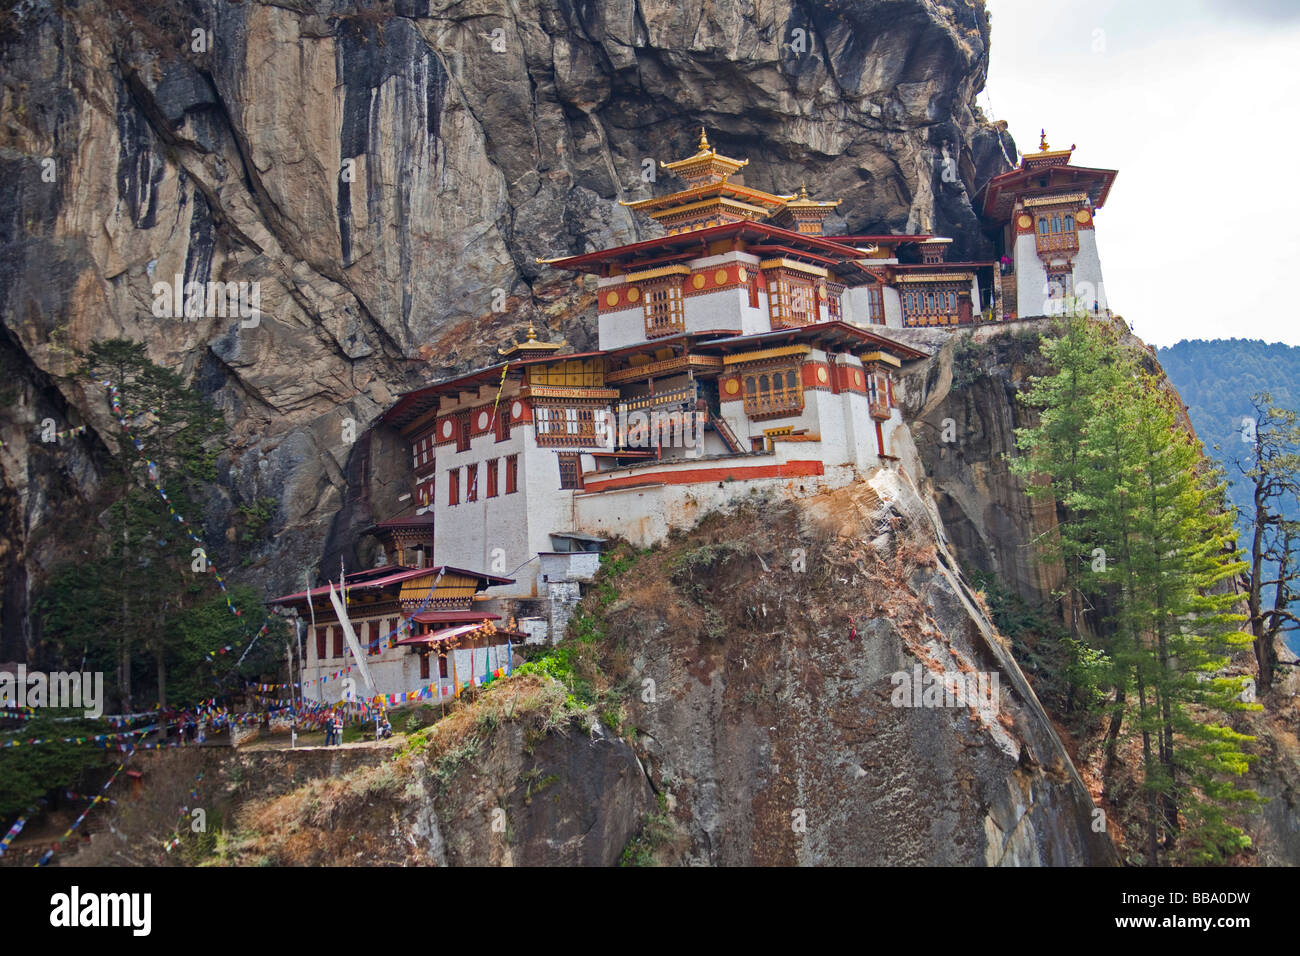 L'Taktshang monastère ou 'Tiger's Nest' près de Paro, Bhoutan Asie.92507 Bhutan-Drugyel Dzong-Paro_- Banque D'Images